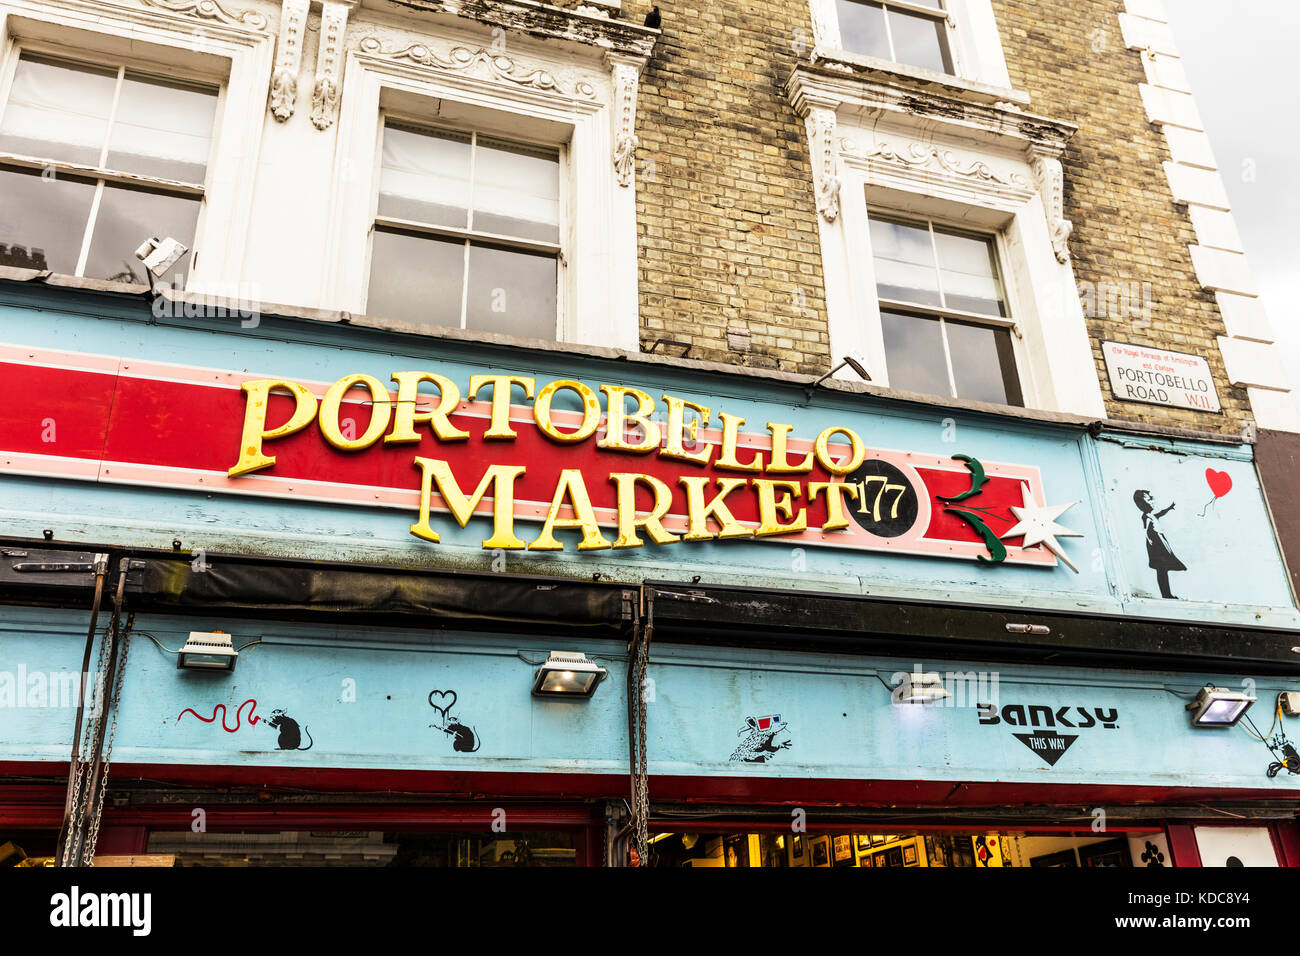 Il mercato di portobello shop front, Portobello Road Londra REGNO UNITO Inghilterra, Portobello Market shop Notting Hill Londra, Portobello Market shop segno, Portobello Foto Stock